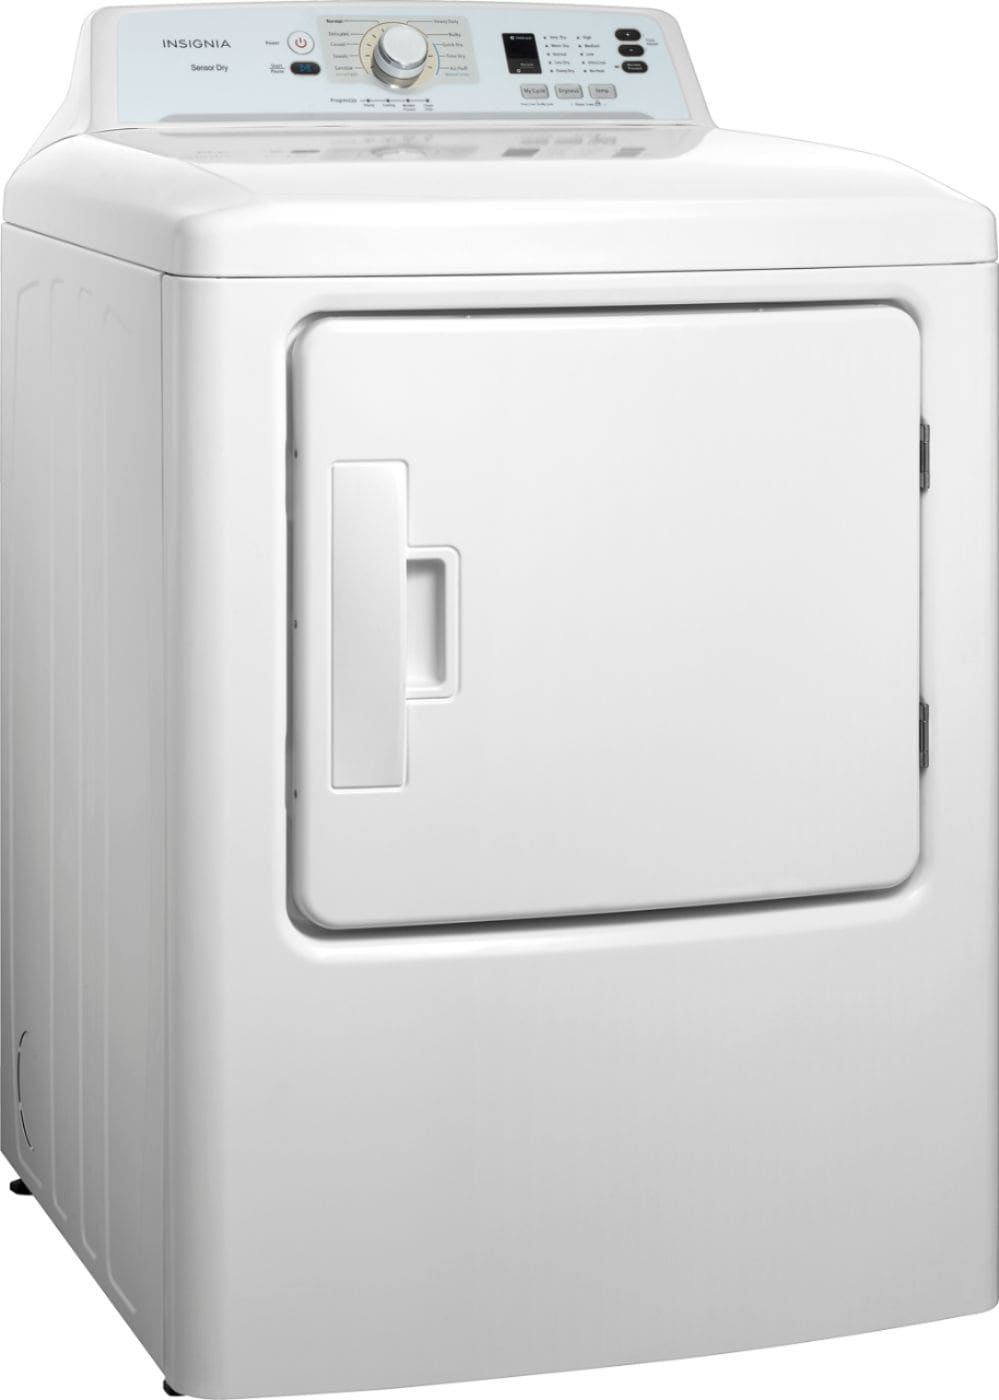 Insignia™ - 6.7 Cu. Ft. Electric Dryer - White_1